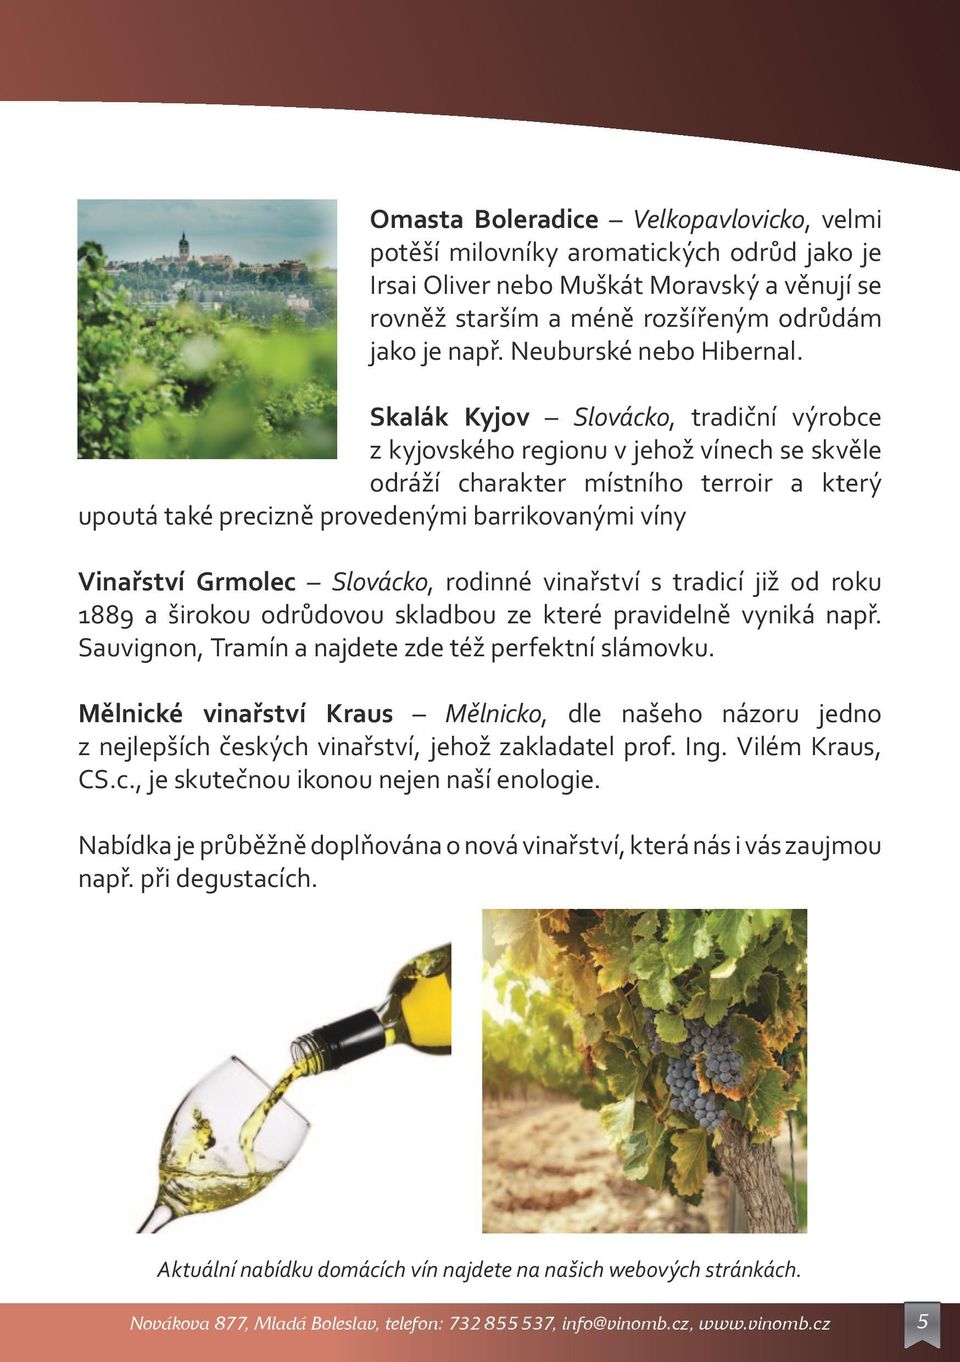 Skalák Kyjov Slovácko, tradiční výrobce z kyjovského regionu v jehož vínech se skvěle odráží charakter místního terroir a který upoutá také precizně provedenými barrikovanými víny Vinařství Grmolec